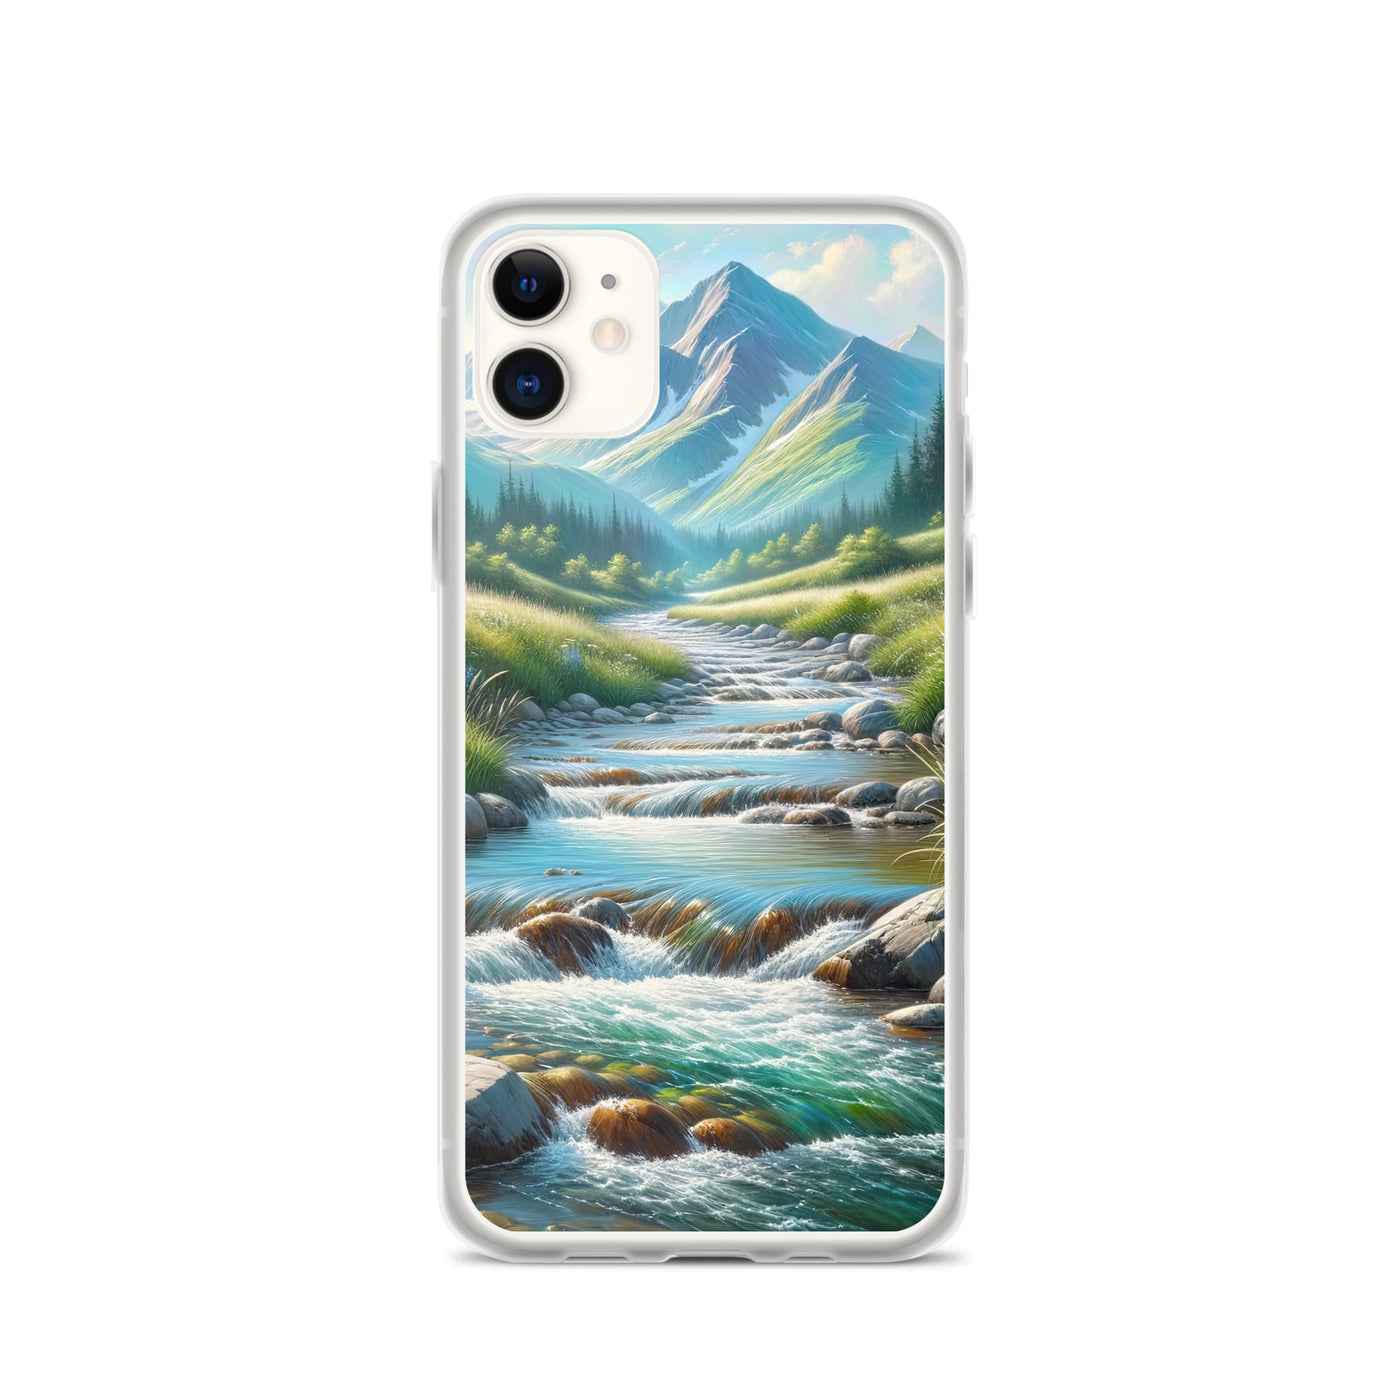 Sanfter Gebirgsbach in Ölgemälde, klares Wasser über glatten Felsen - iPhone Schutzhülle (durchsichtig) berge xxx yyy zzz iPhone 11